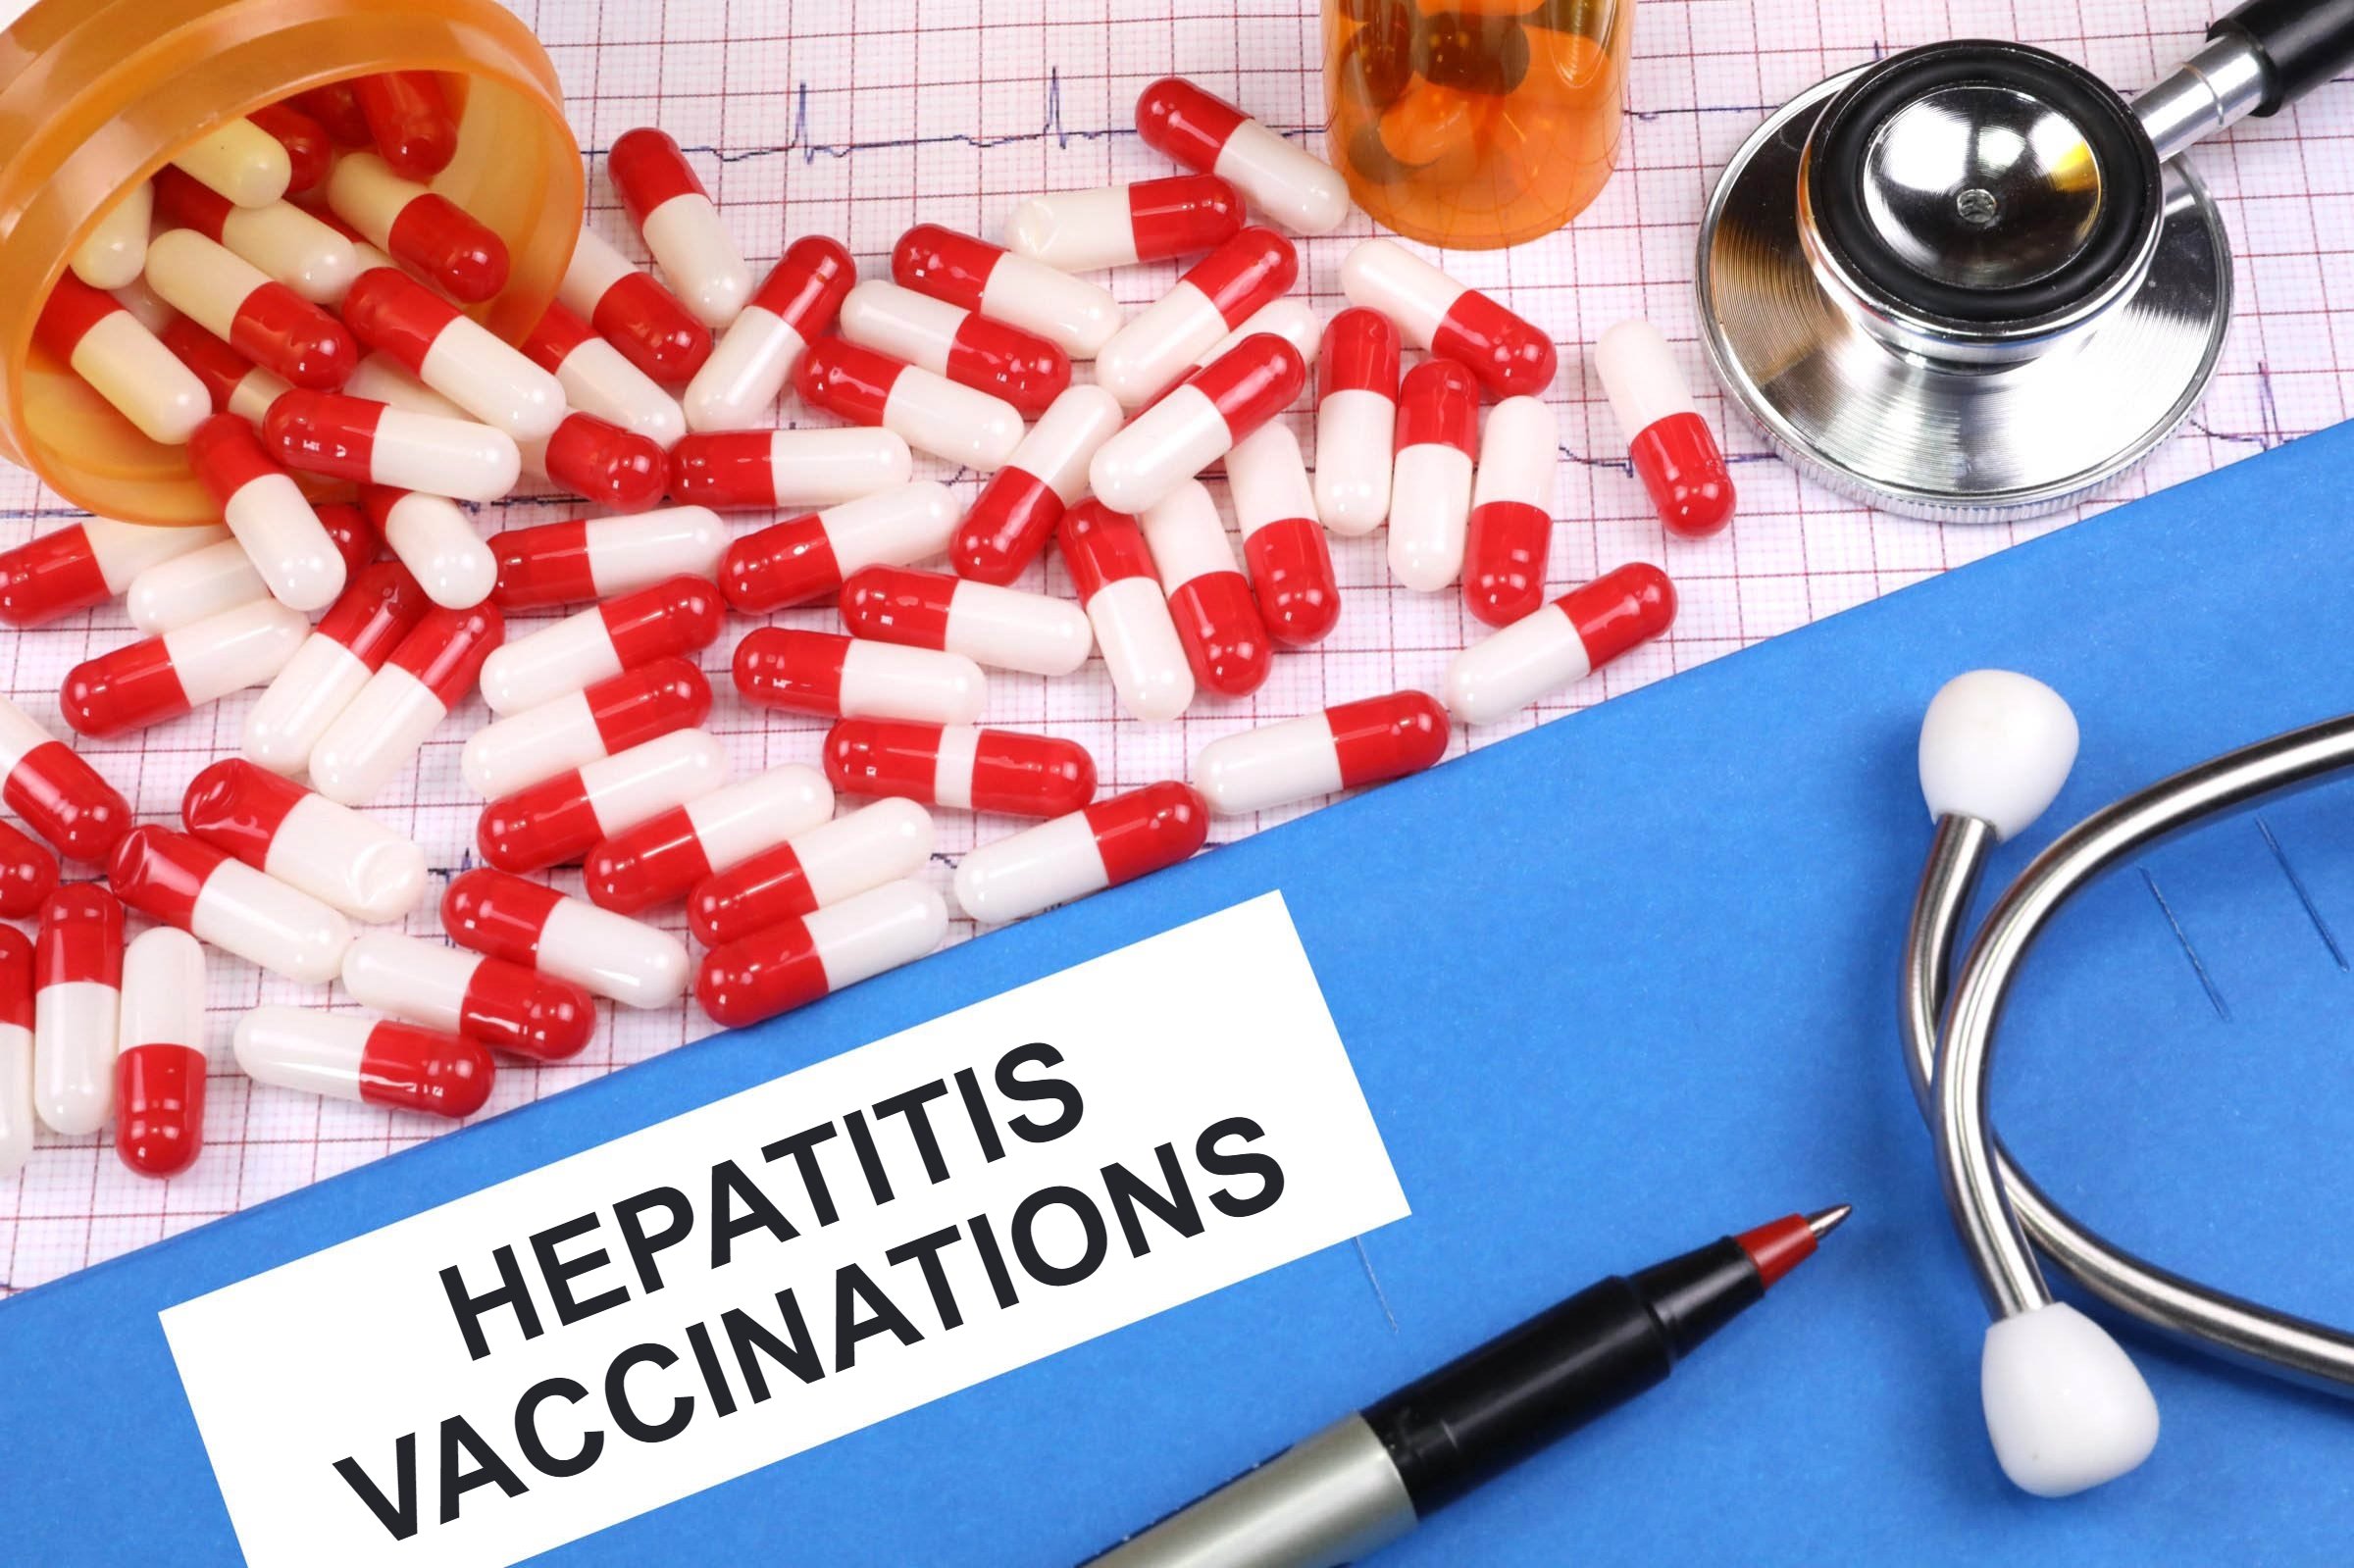 hepatitis vaccinations